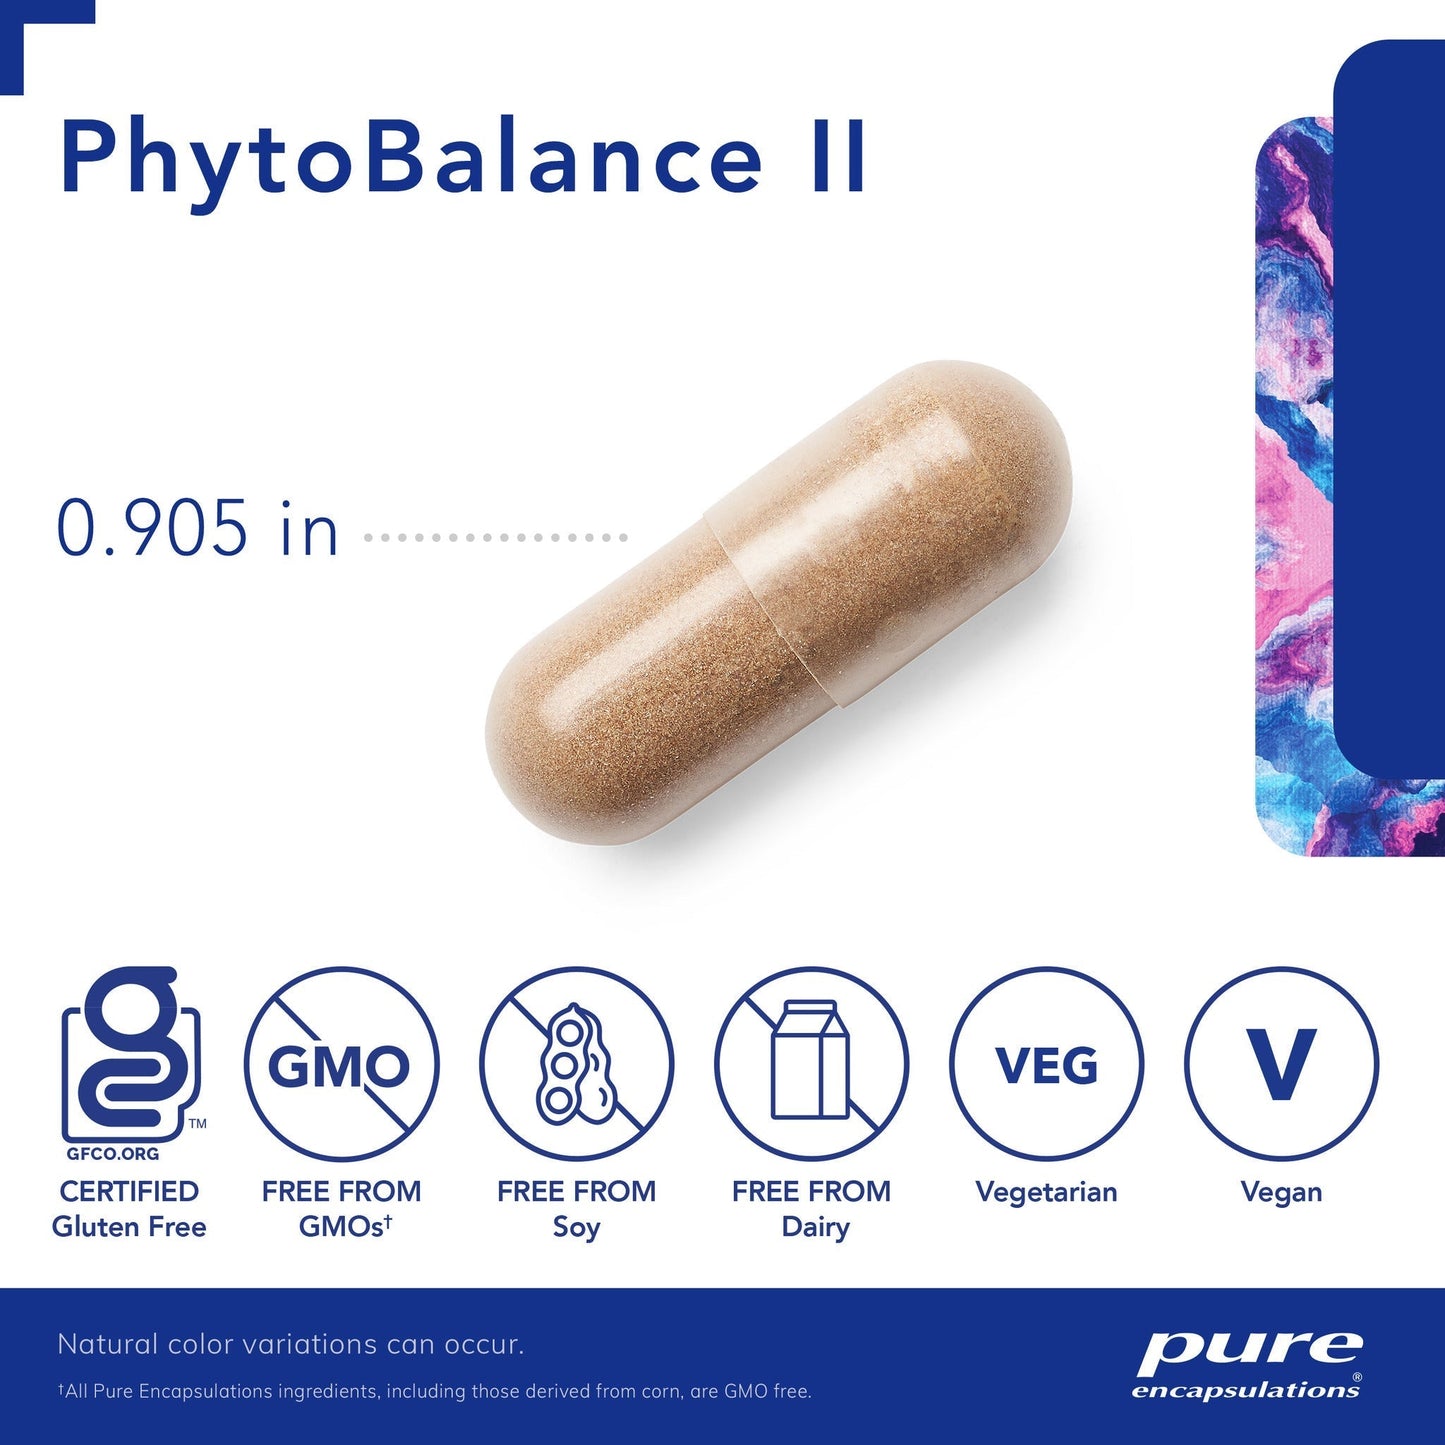 PhytoBalance II